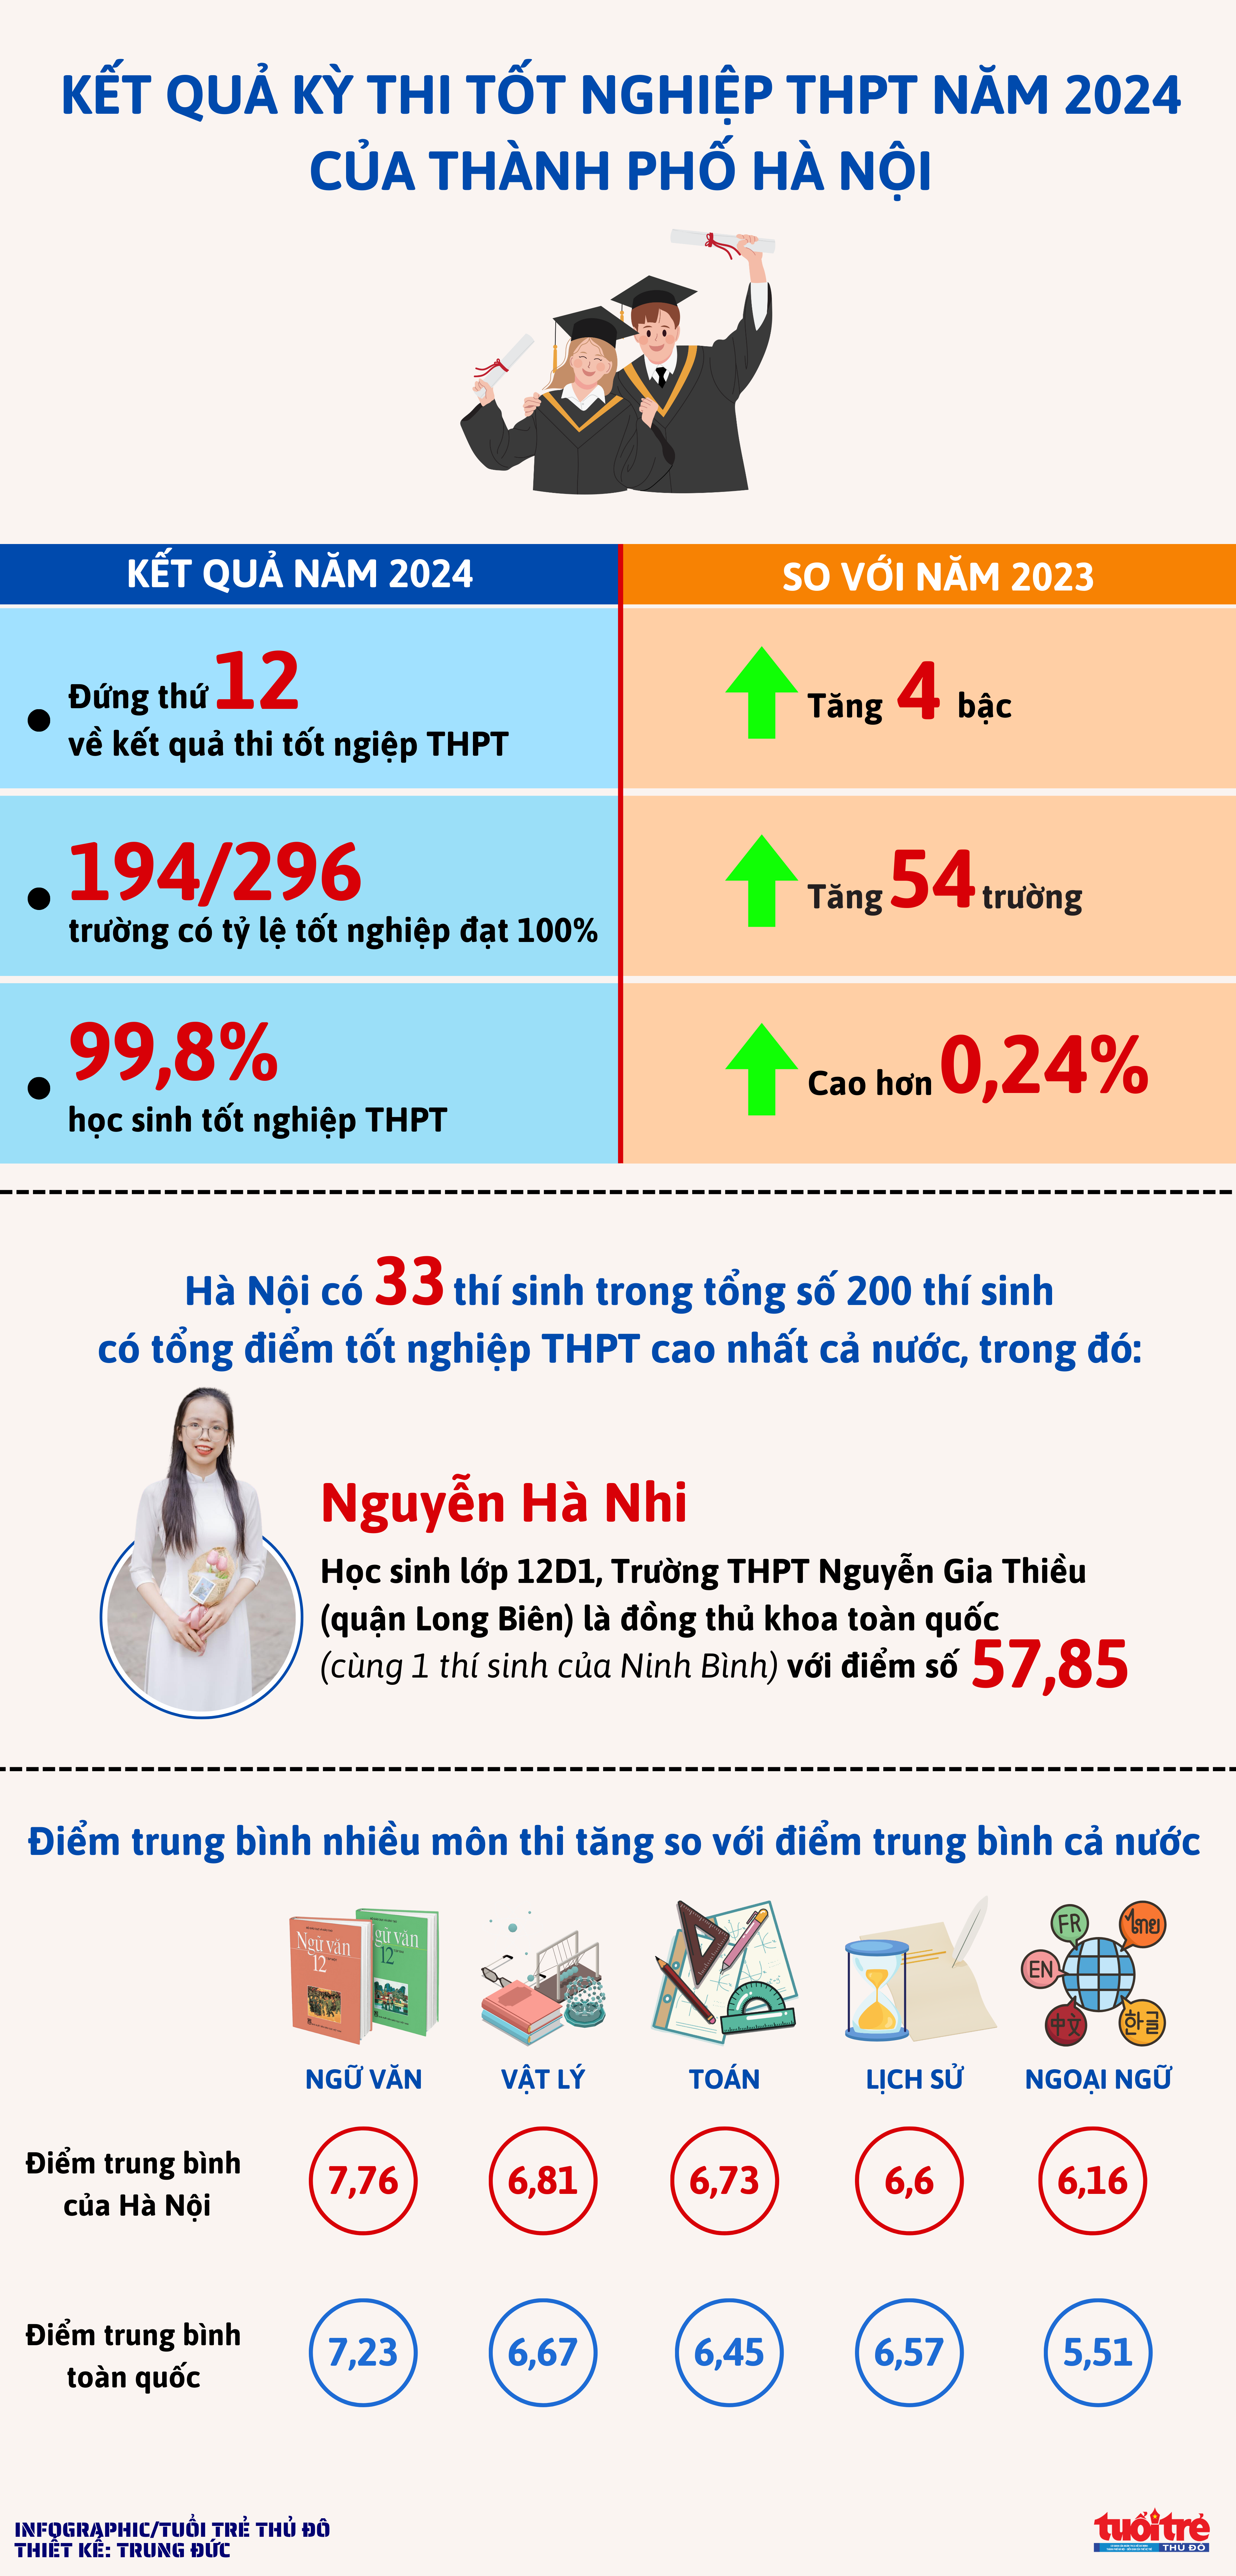 Kết quả kỳ thi tốt nghiệp THPT năm 2024 tại Hà Nội